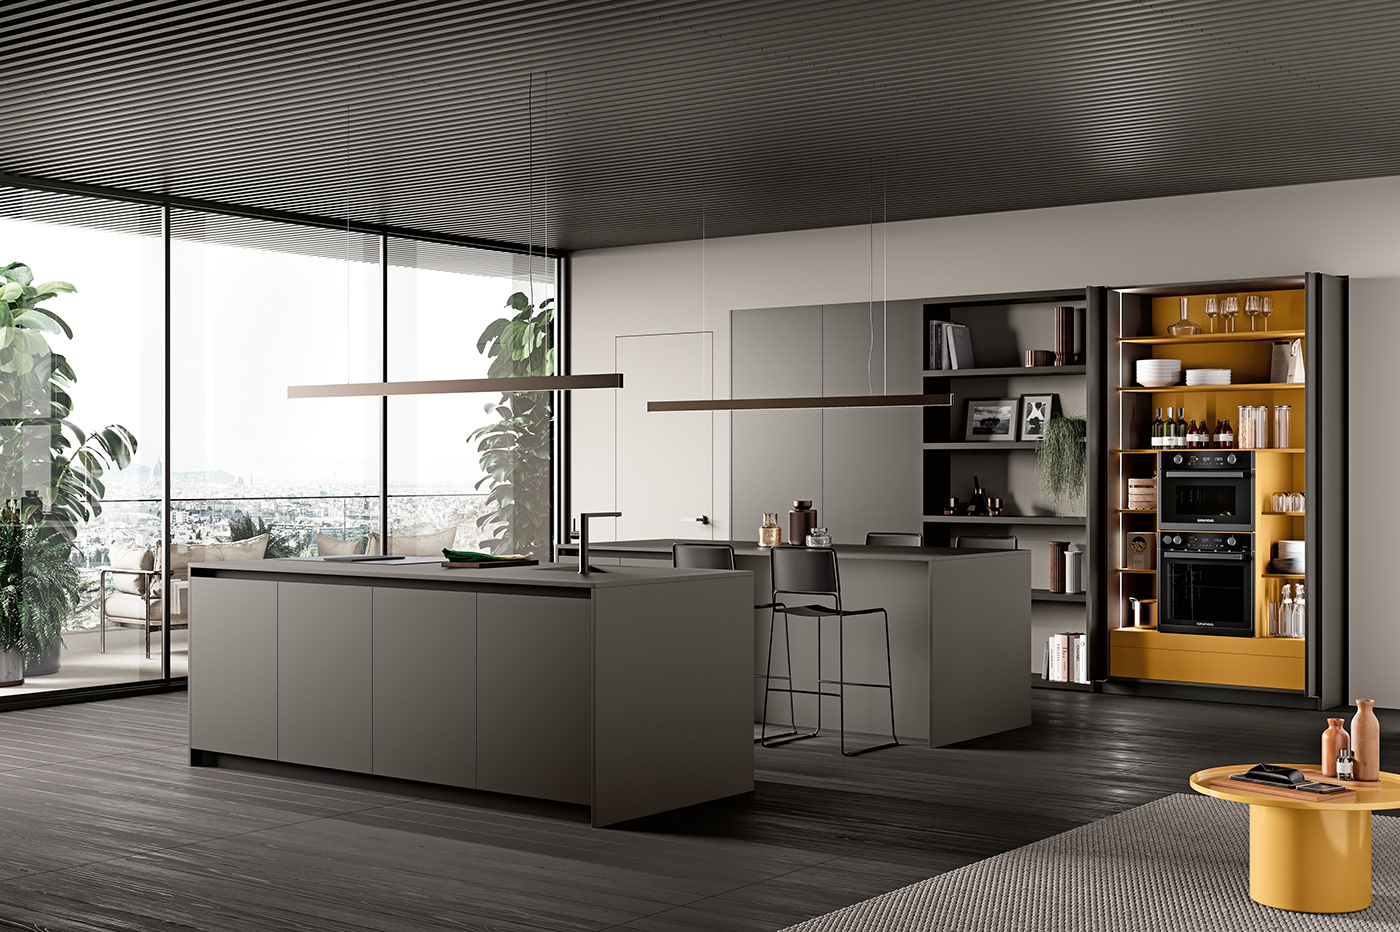 3D 3ds max architecture archviz CGI design kitchen Render visualization interior design 